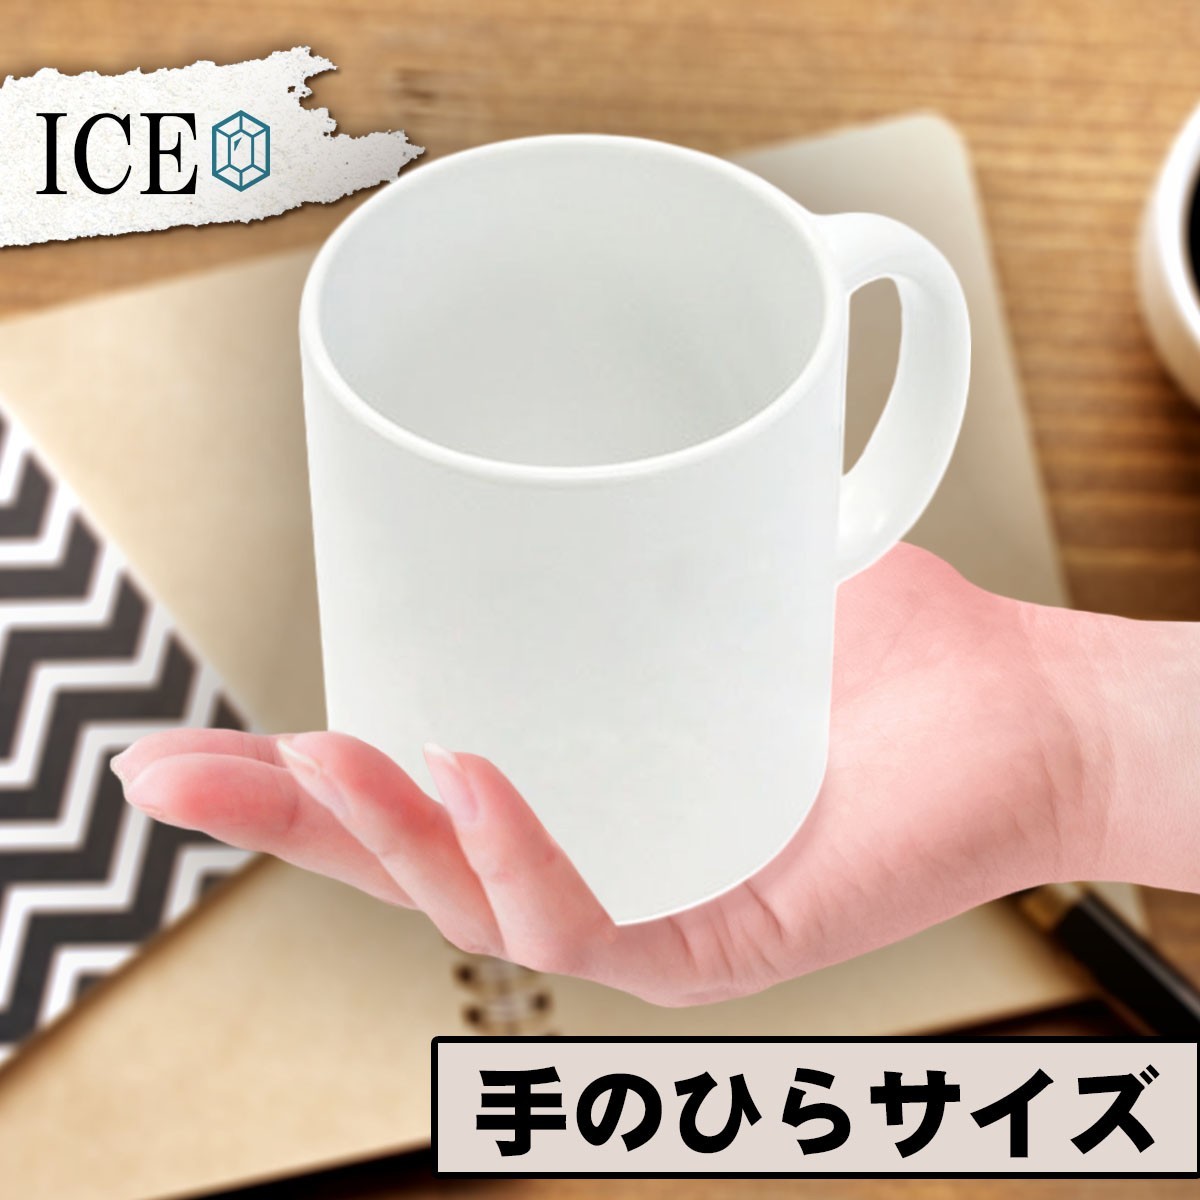 お雛さま お内裏さま おもしろ マグカップ コップ 陶器 可愛い かわいい 白 シンプル かわいい カッコイイ シュール 面白い ジョーク ゆる_画像2